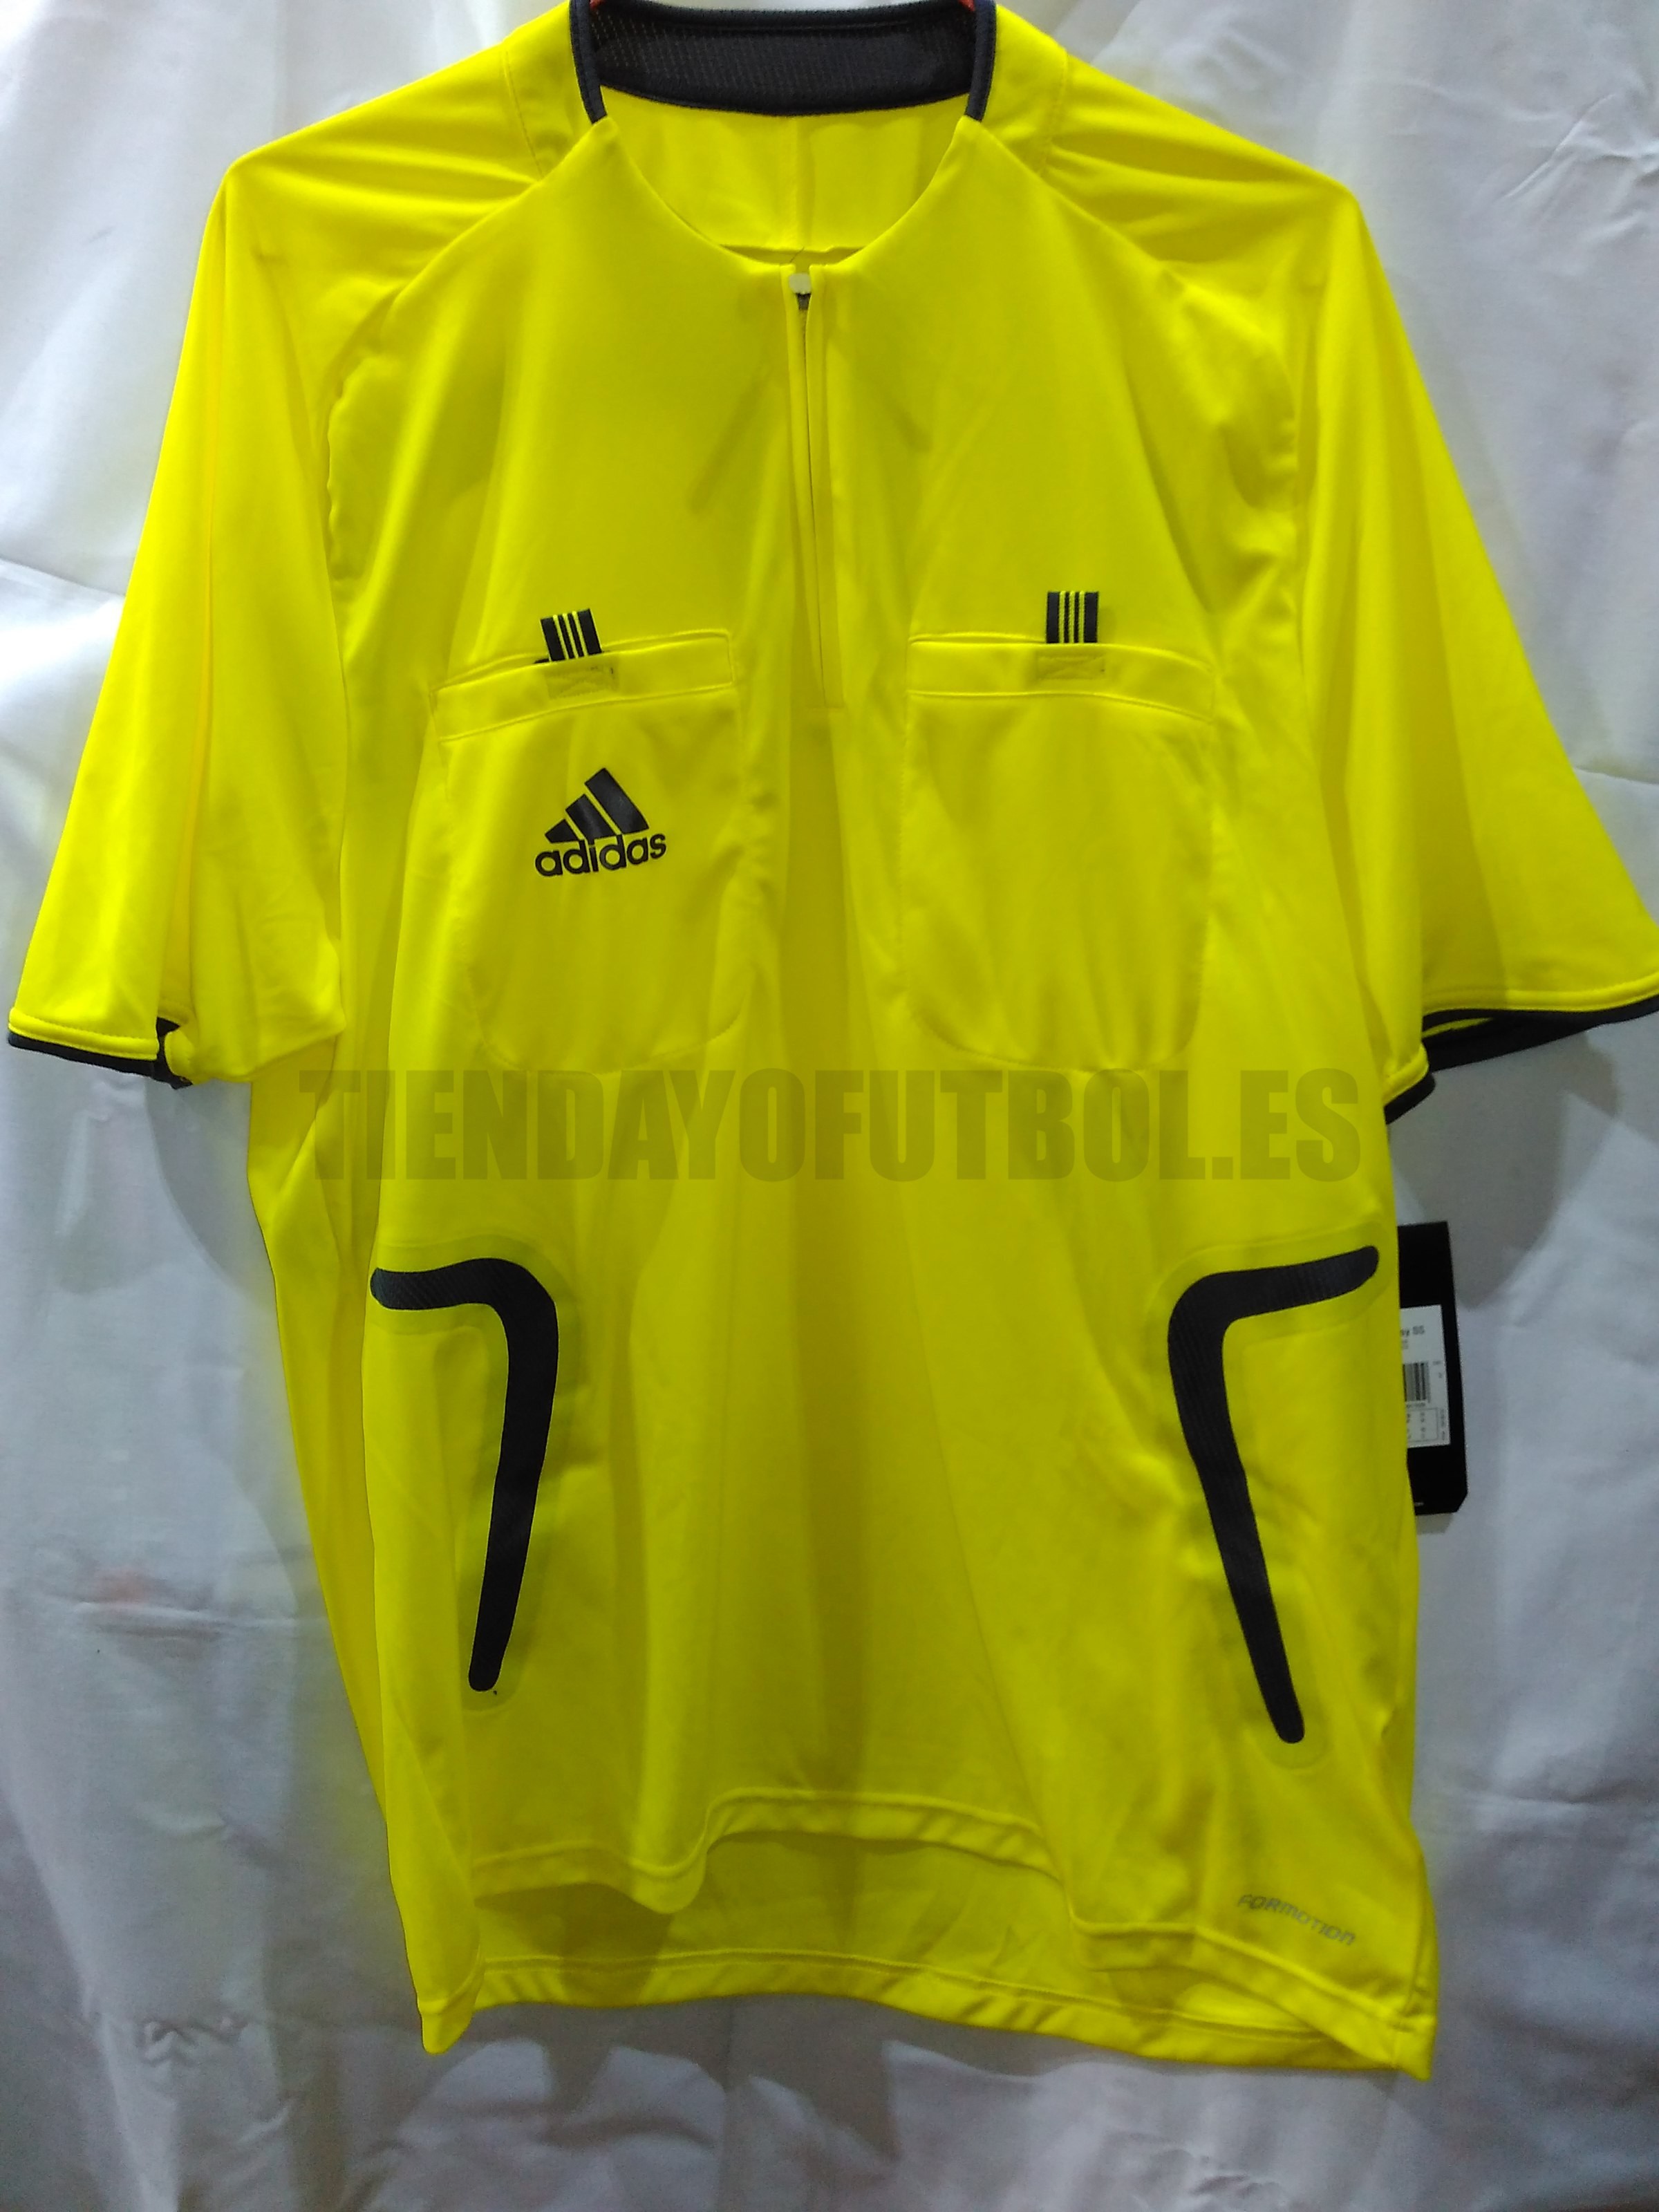 Arbitro su Camiseta| Adidas camiseta Arbitro l Camiseta amarilla arbitro Futbol